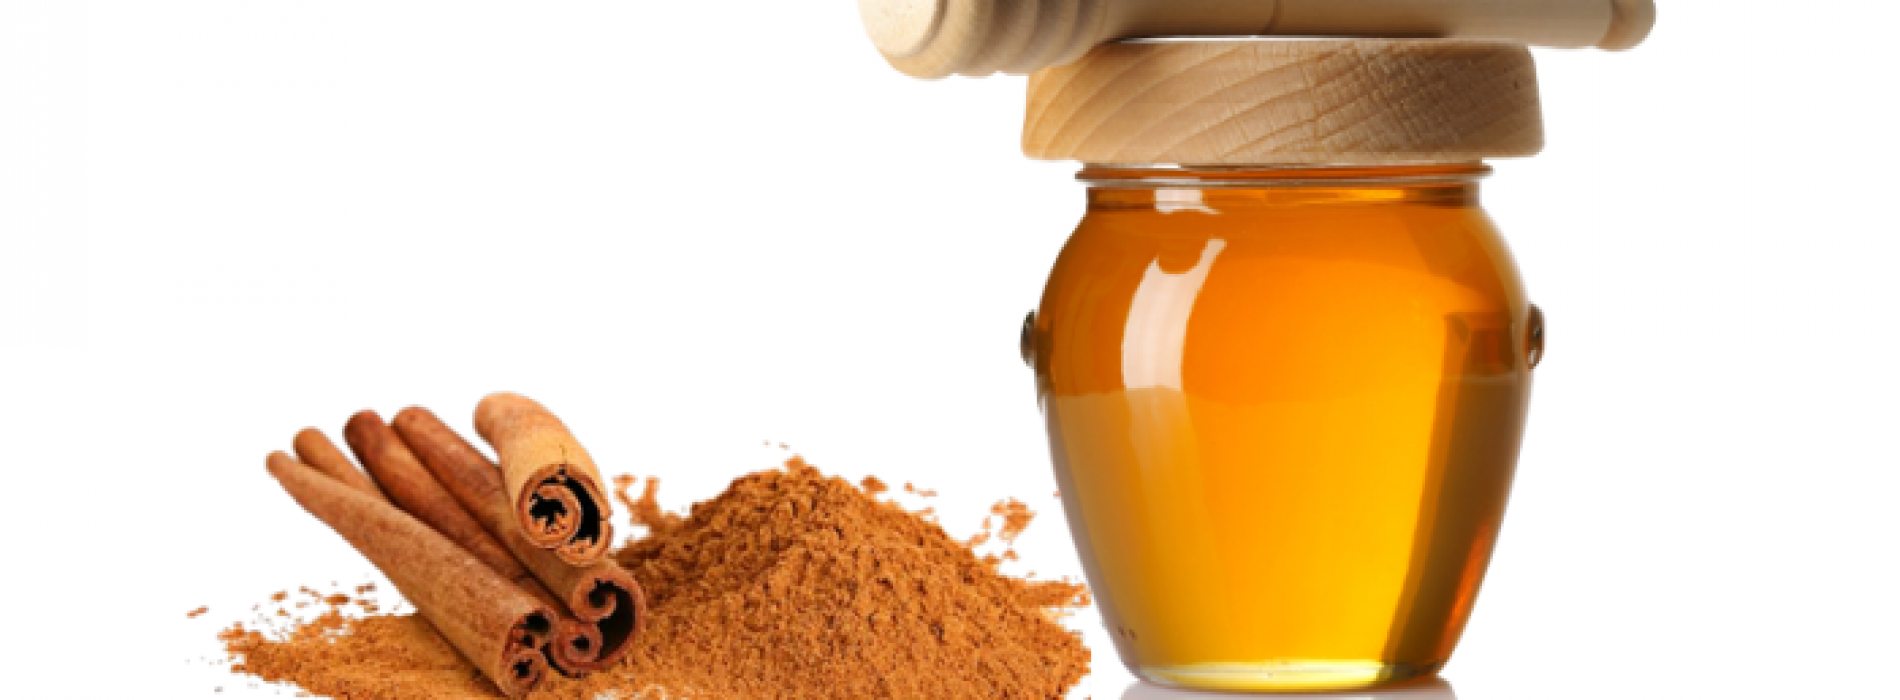 De wonderlijke genezende eigenschappen van Honing en Kaneel